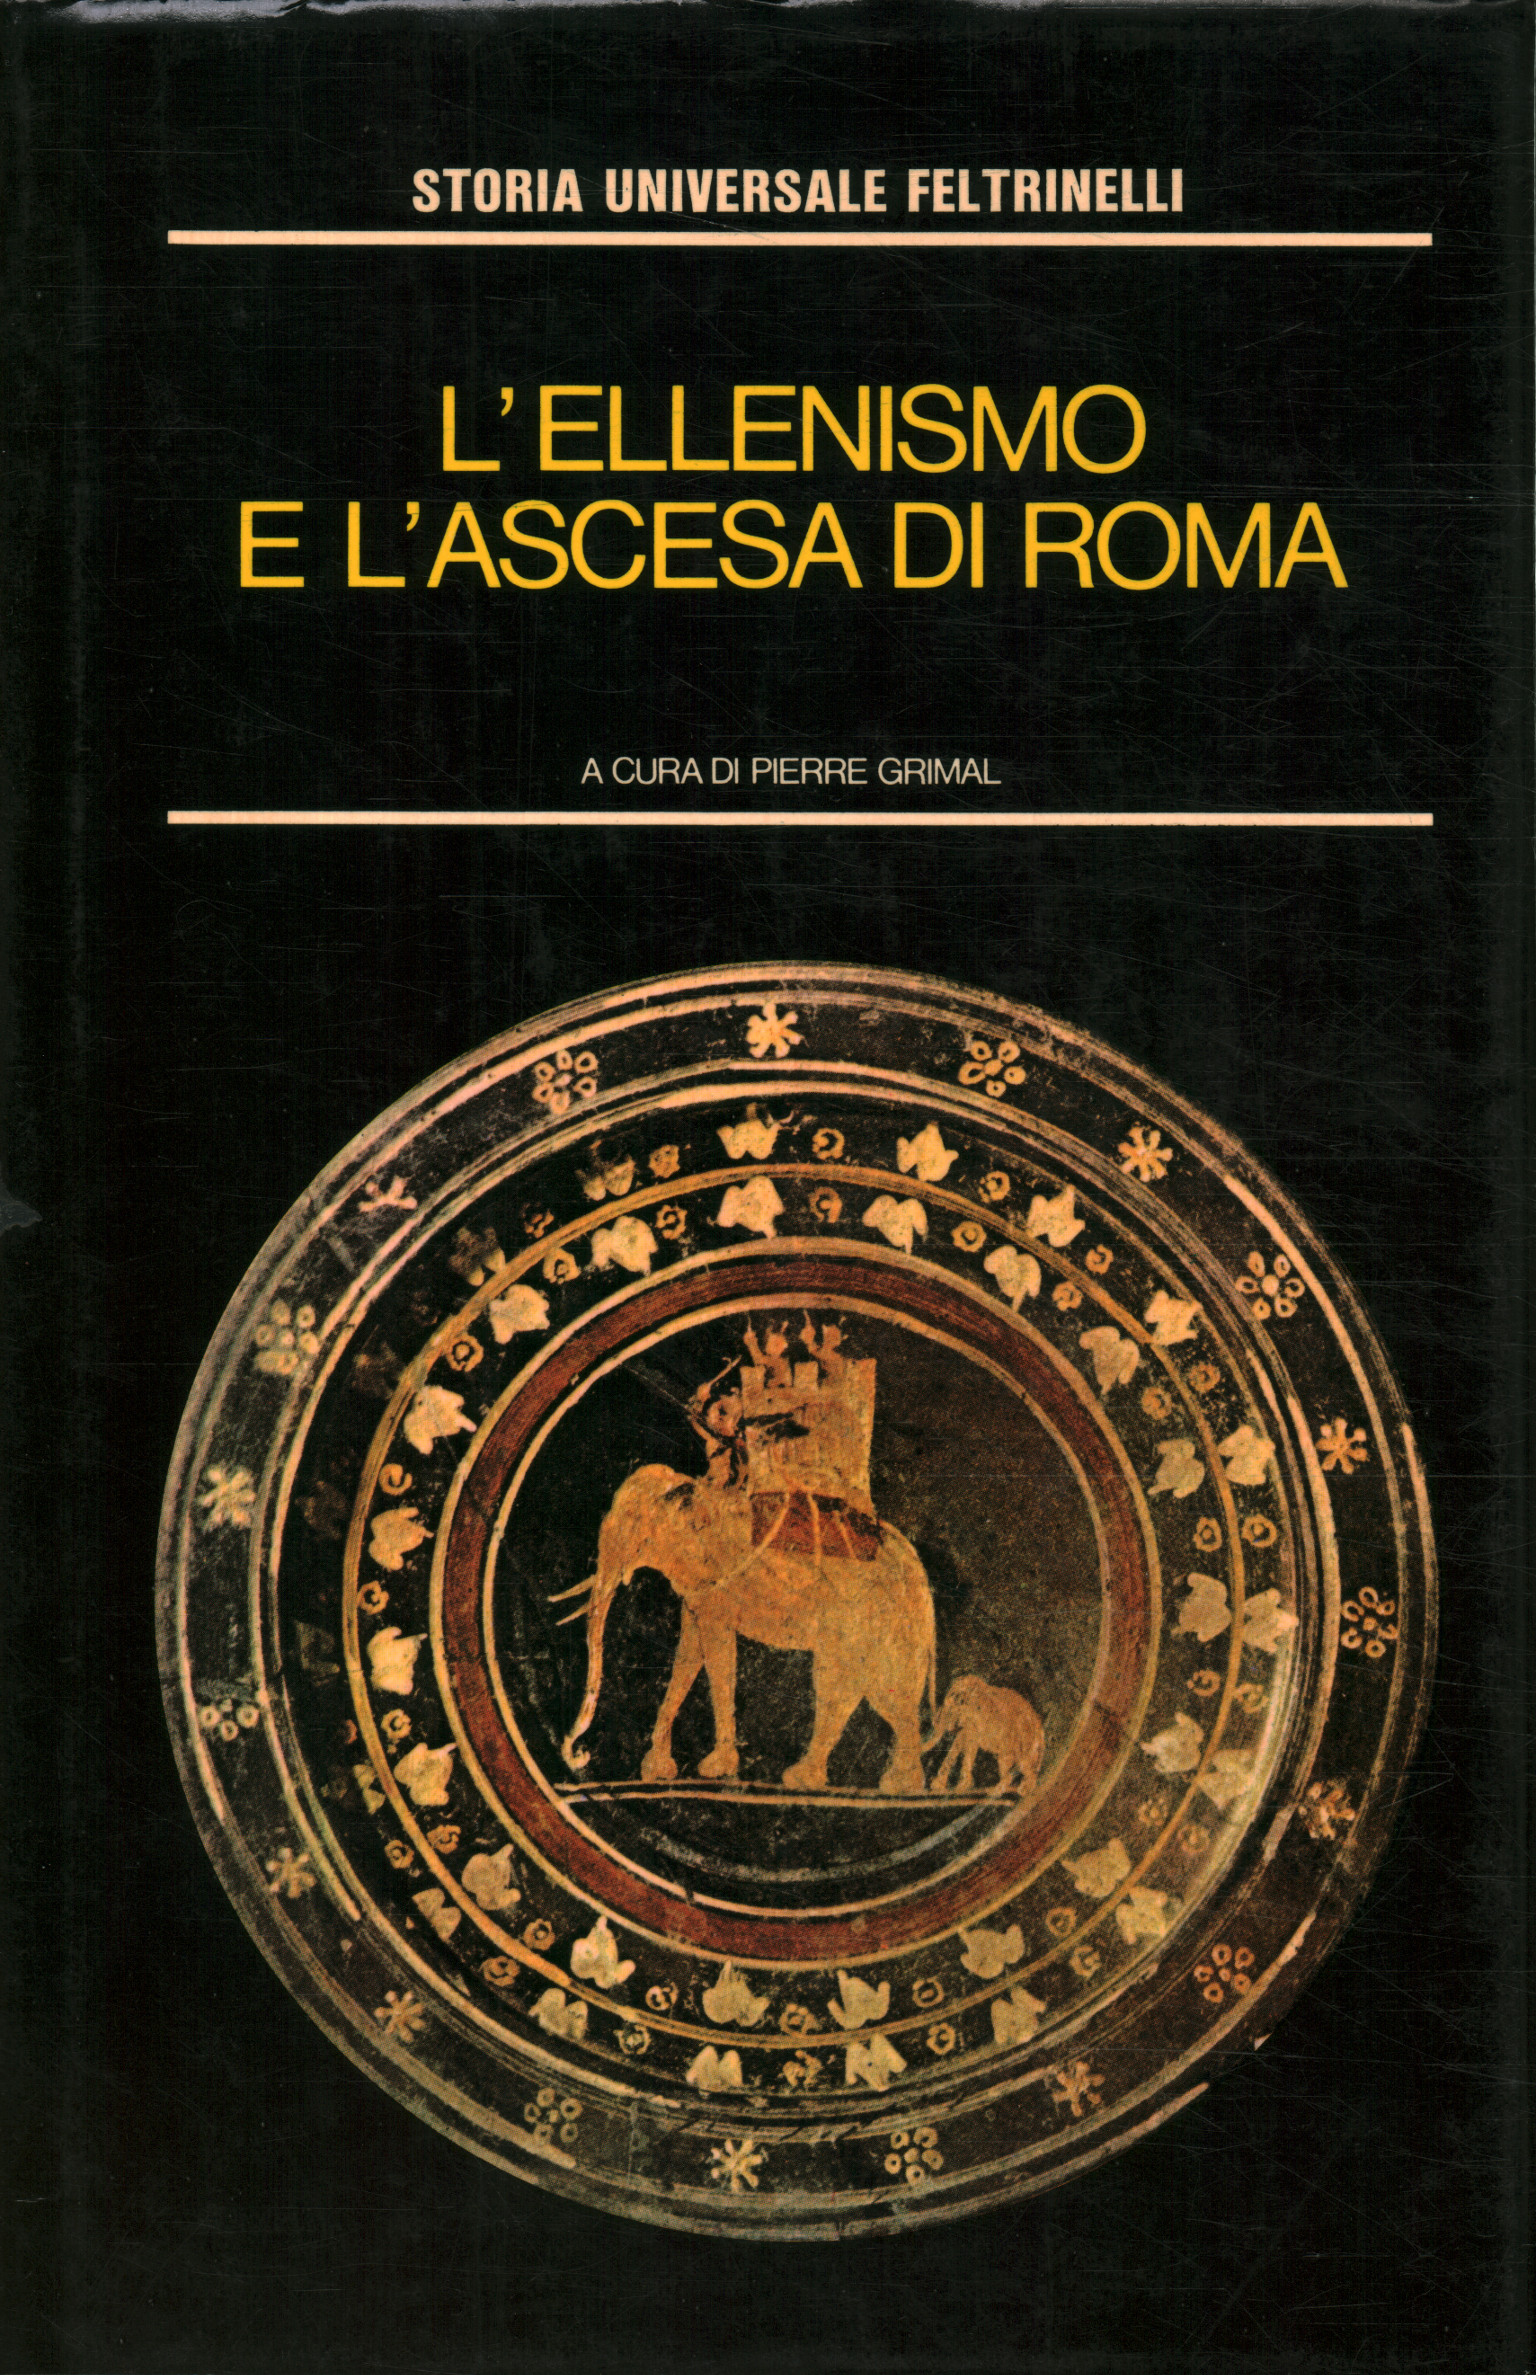 El helenismo y el ascenso de Roma, Pierre Grimal